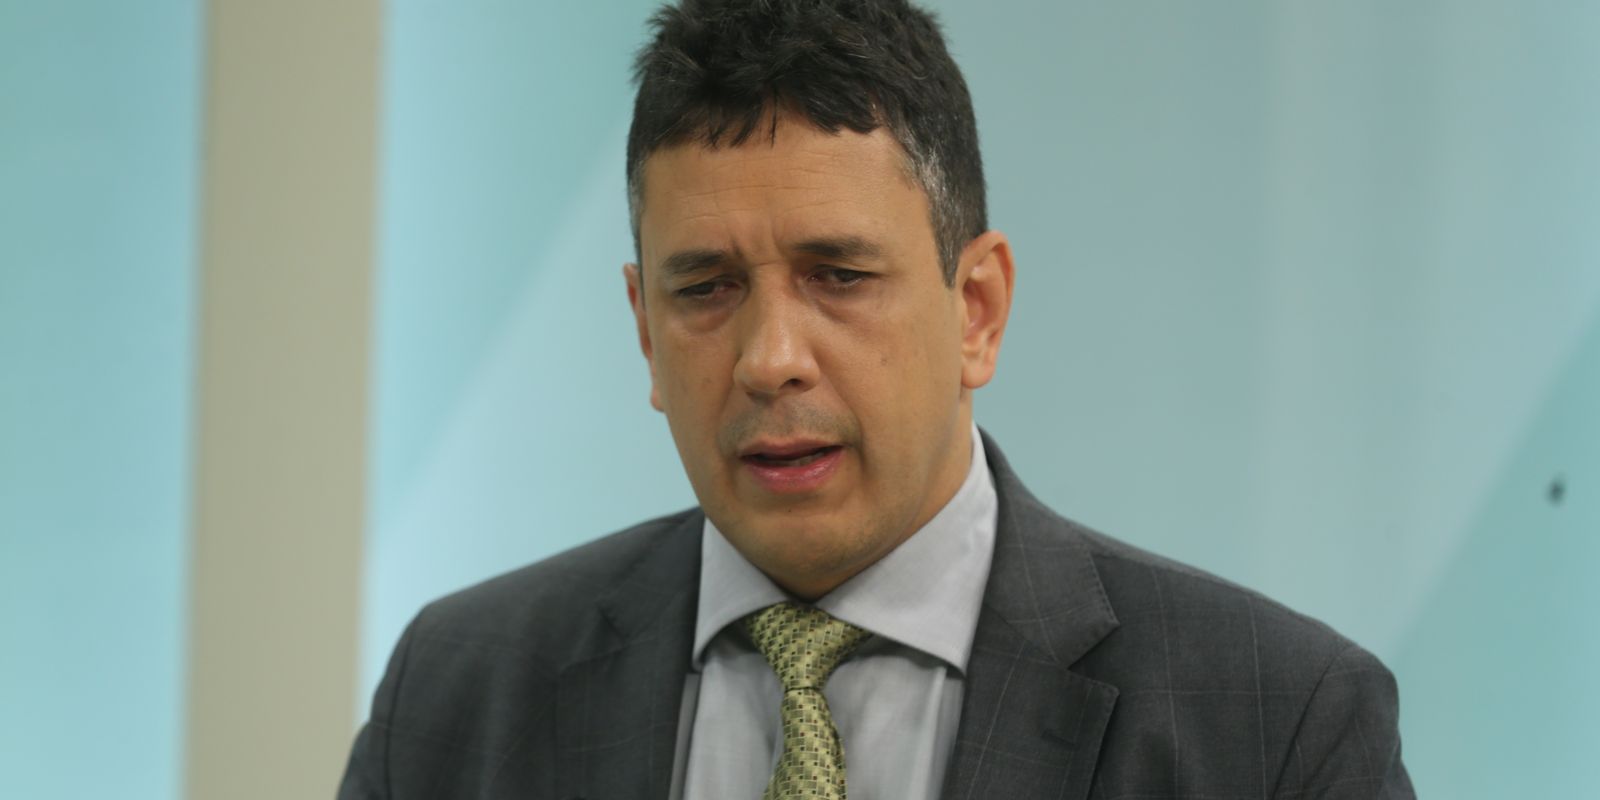 Cláudio Panoeiro, Secretário Nacional dos Direitos da Pessoa com Deficiência ( MMFDH), é o entrevistado do programa, Brasil em Pauta, na TV Brasil.